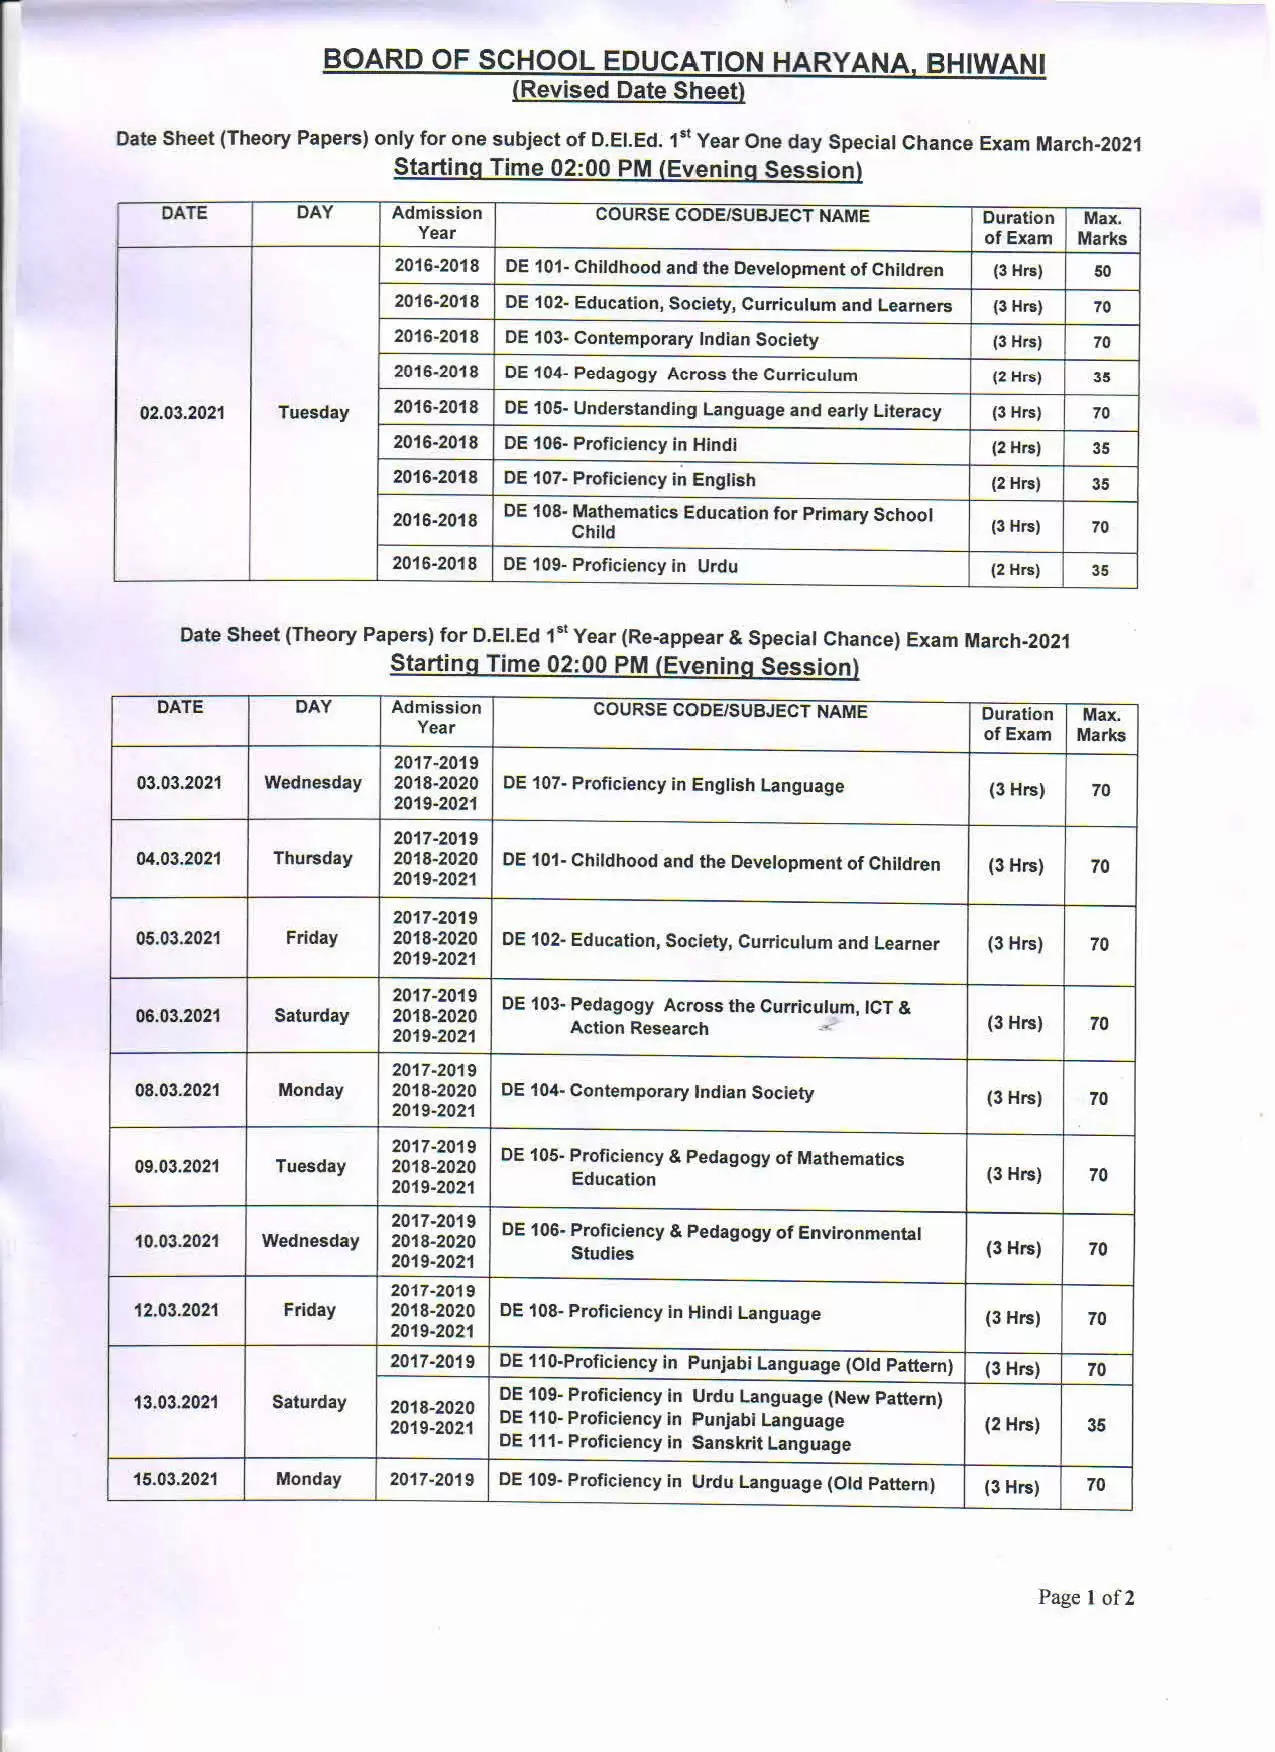 हरियाणा में डी.एड./डी.एल.एड. की परीक्षाओं की तारीख घोषित, देखिये डेटशीट